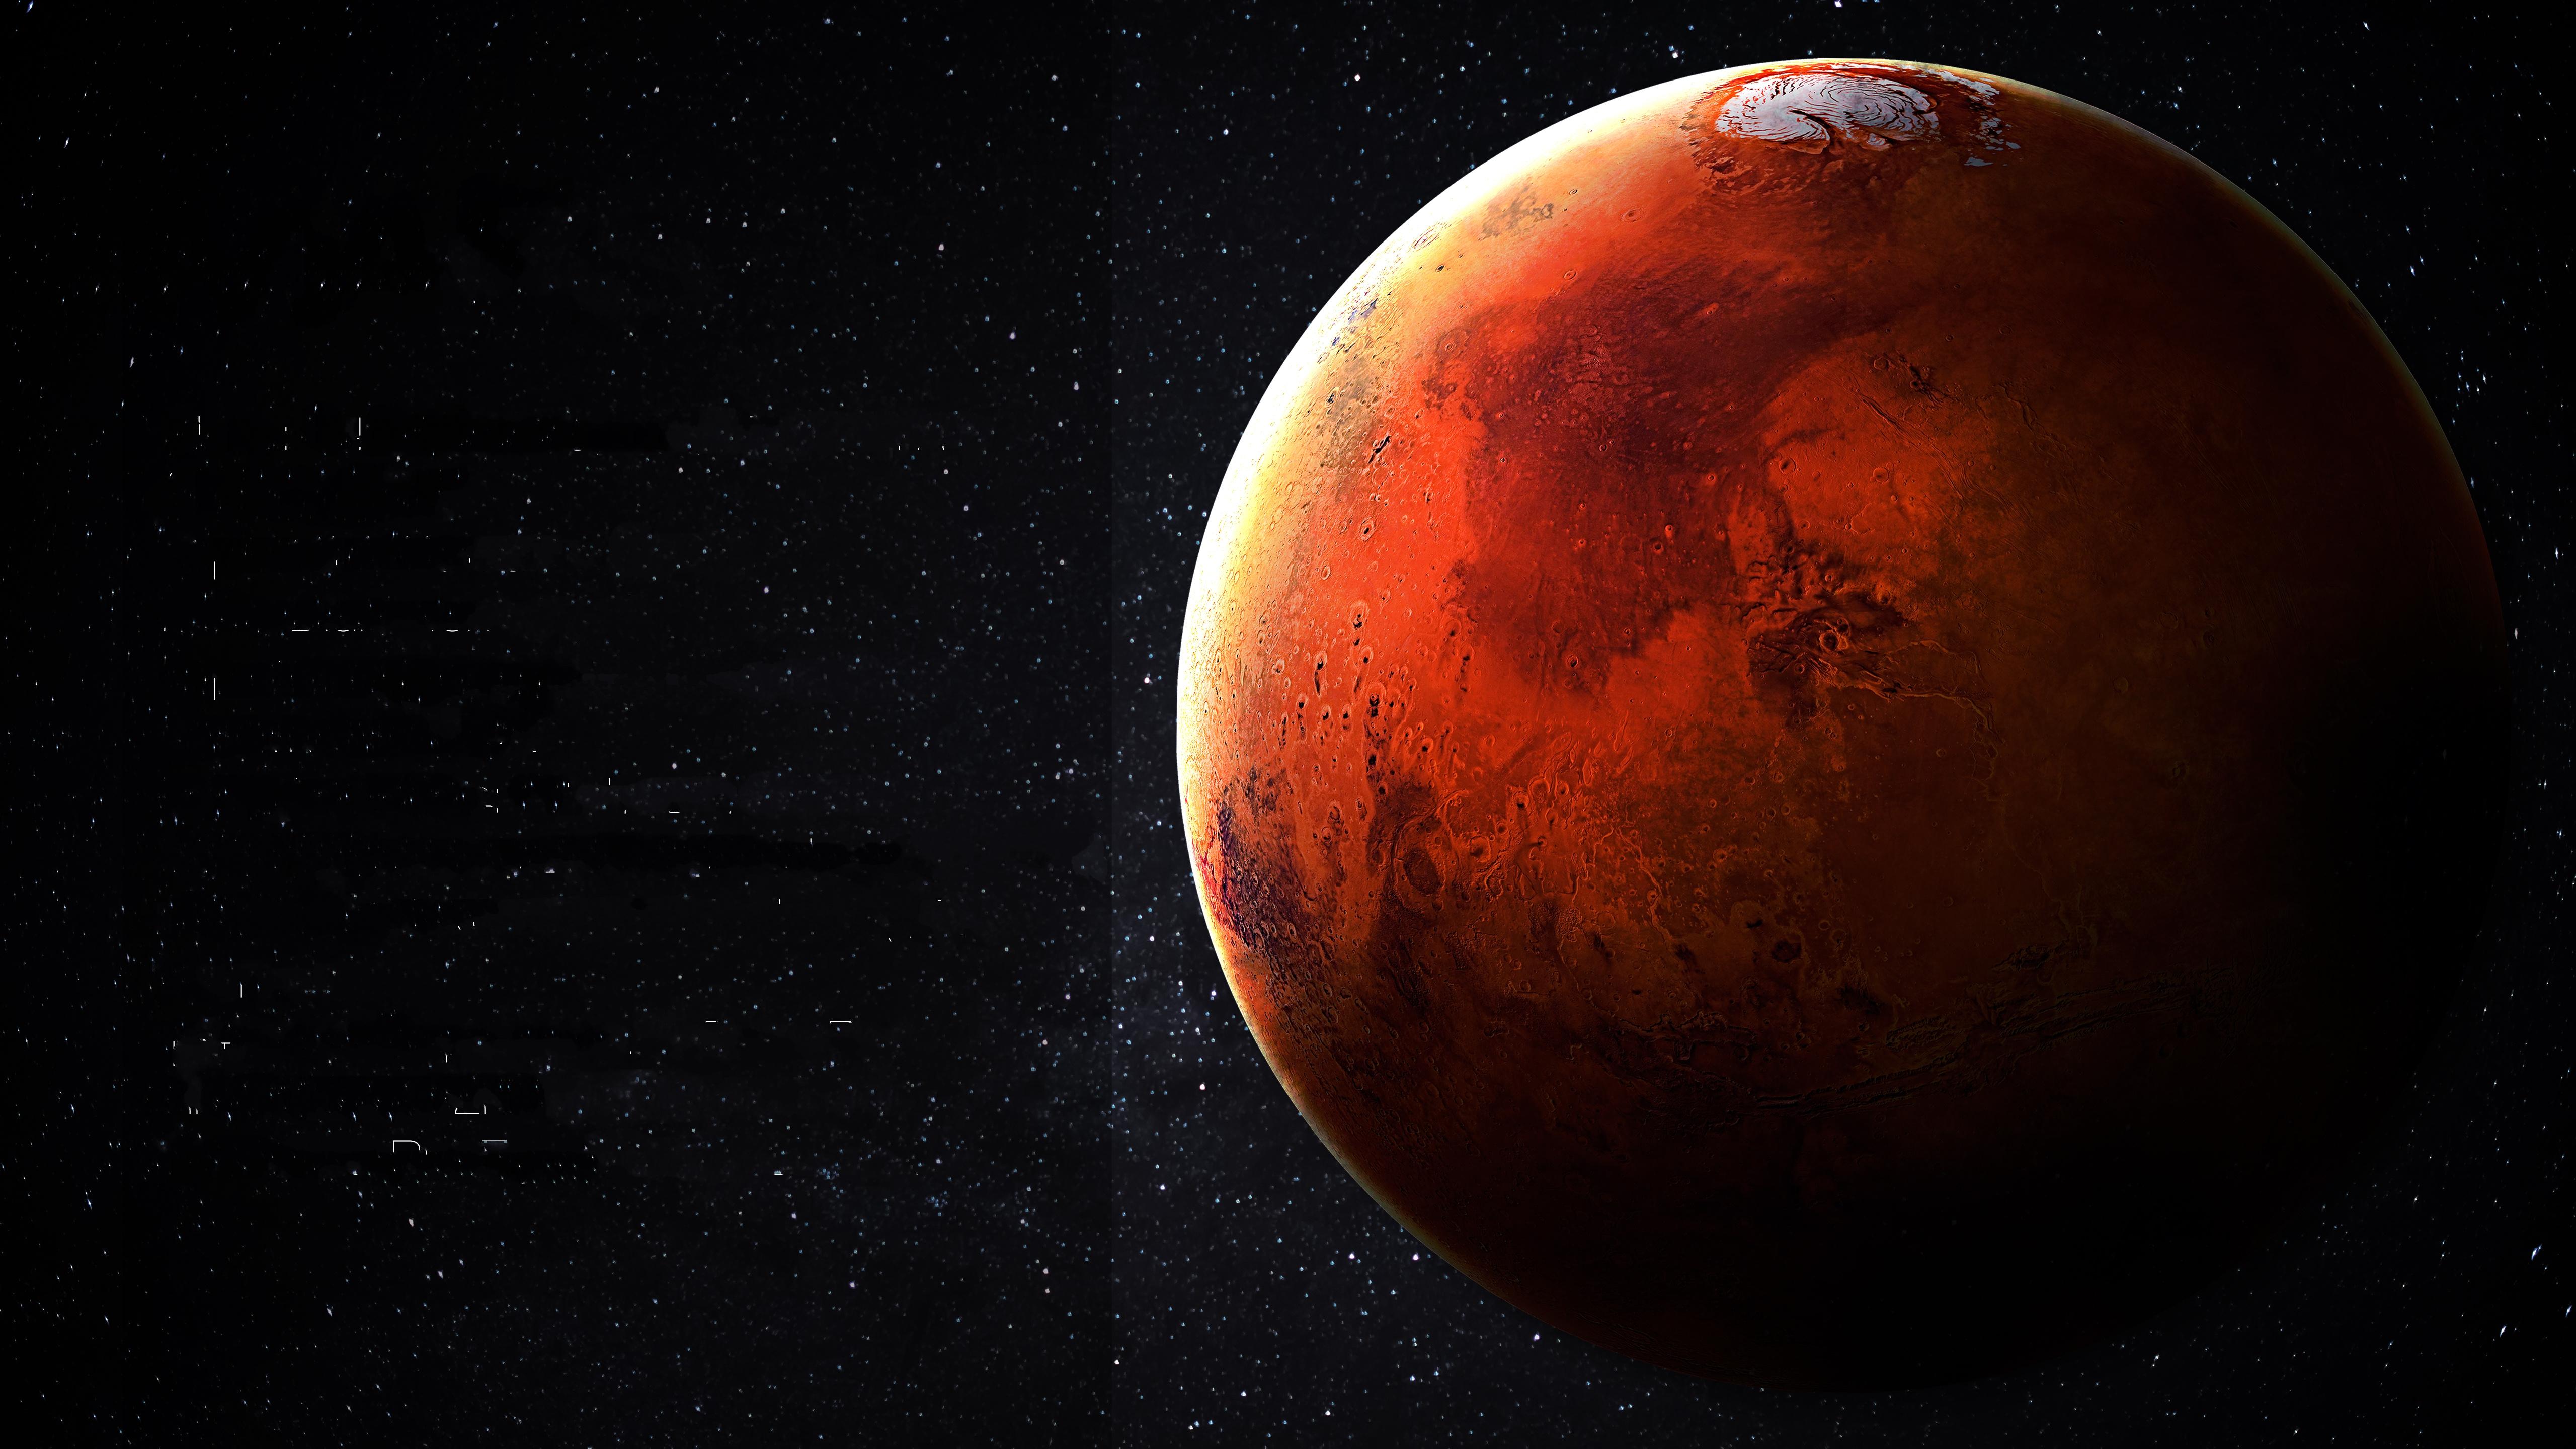 5120 x 2880 · jpeg - Mars 5k Retina Ultra HD Wallpaper | Background Image | 5120x2880 | ID ...